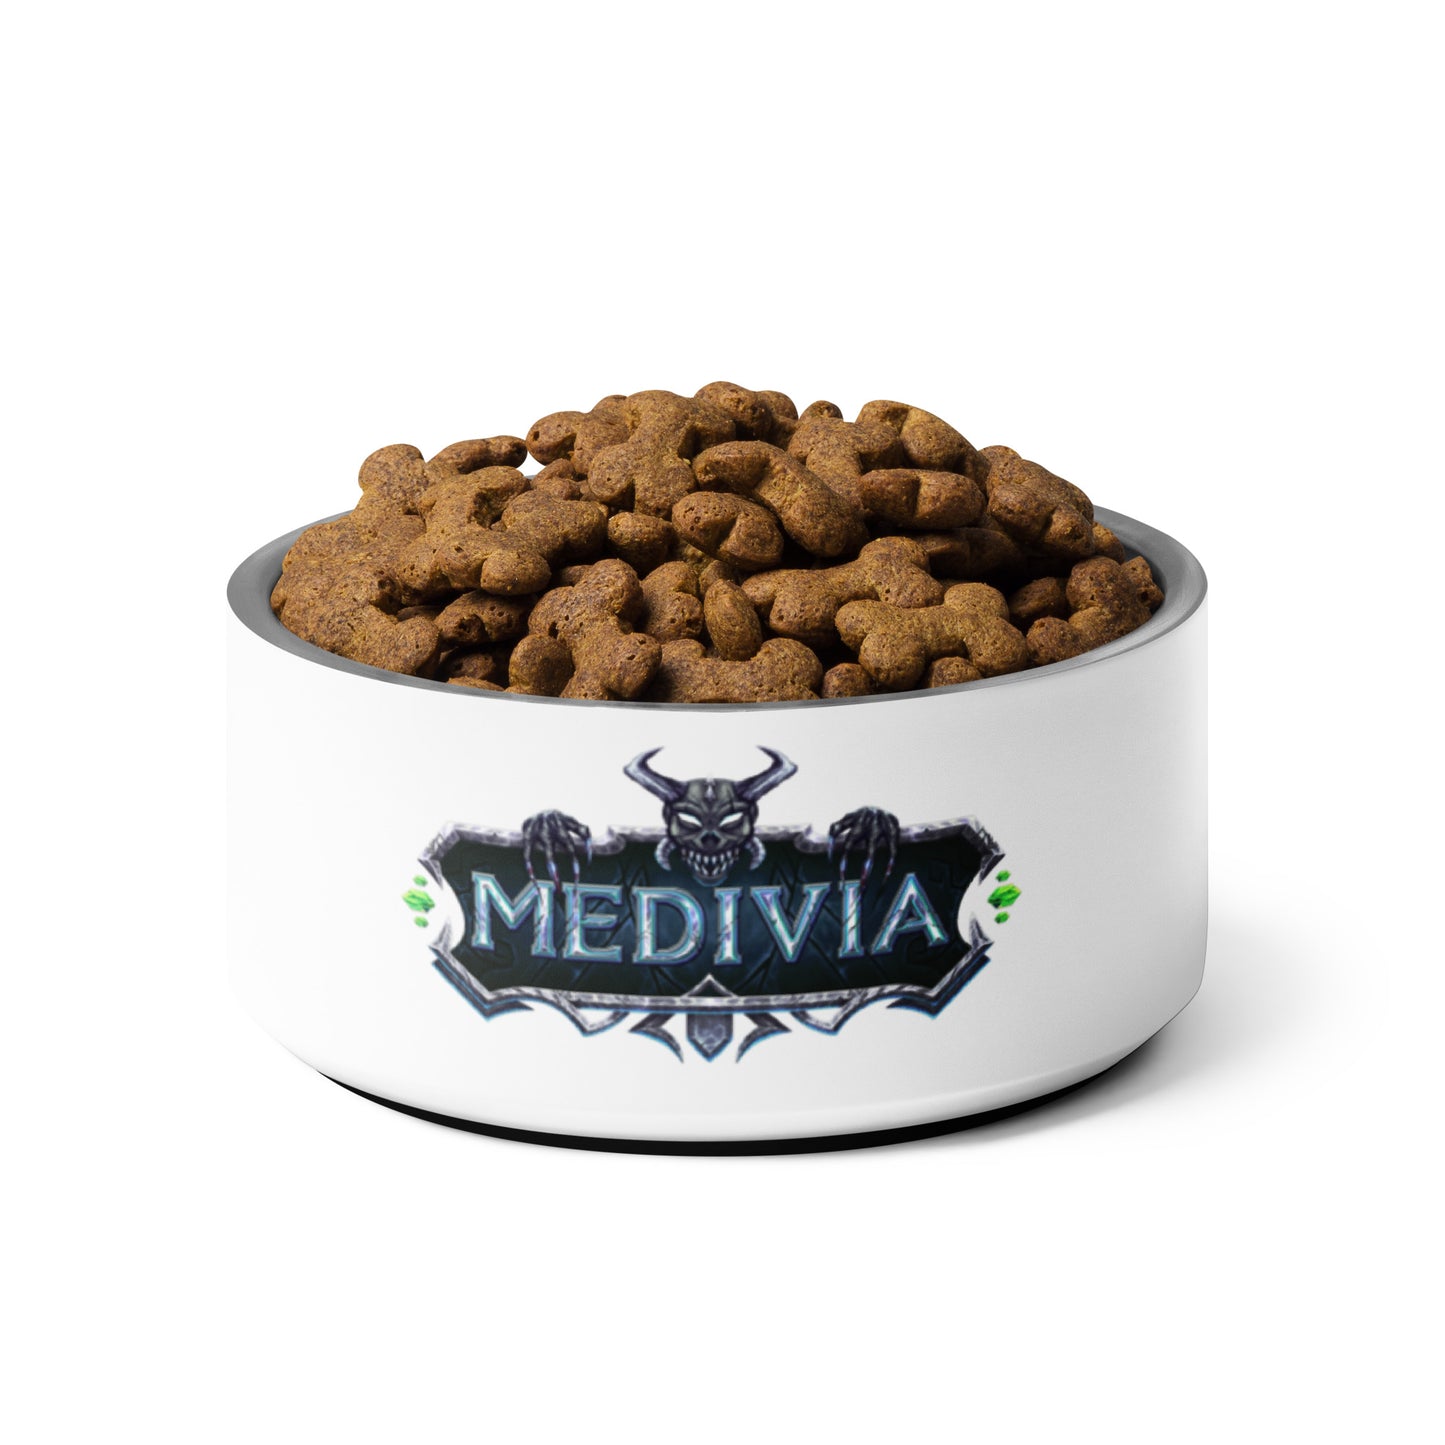 Medivia Logo Pet Bowl